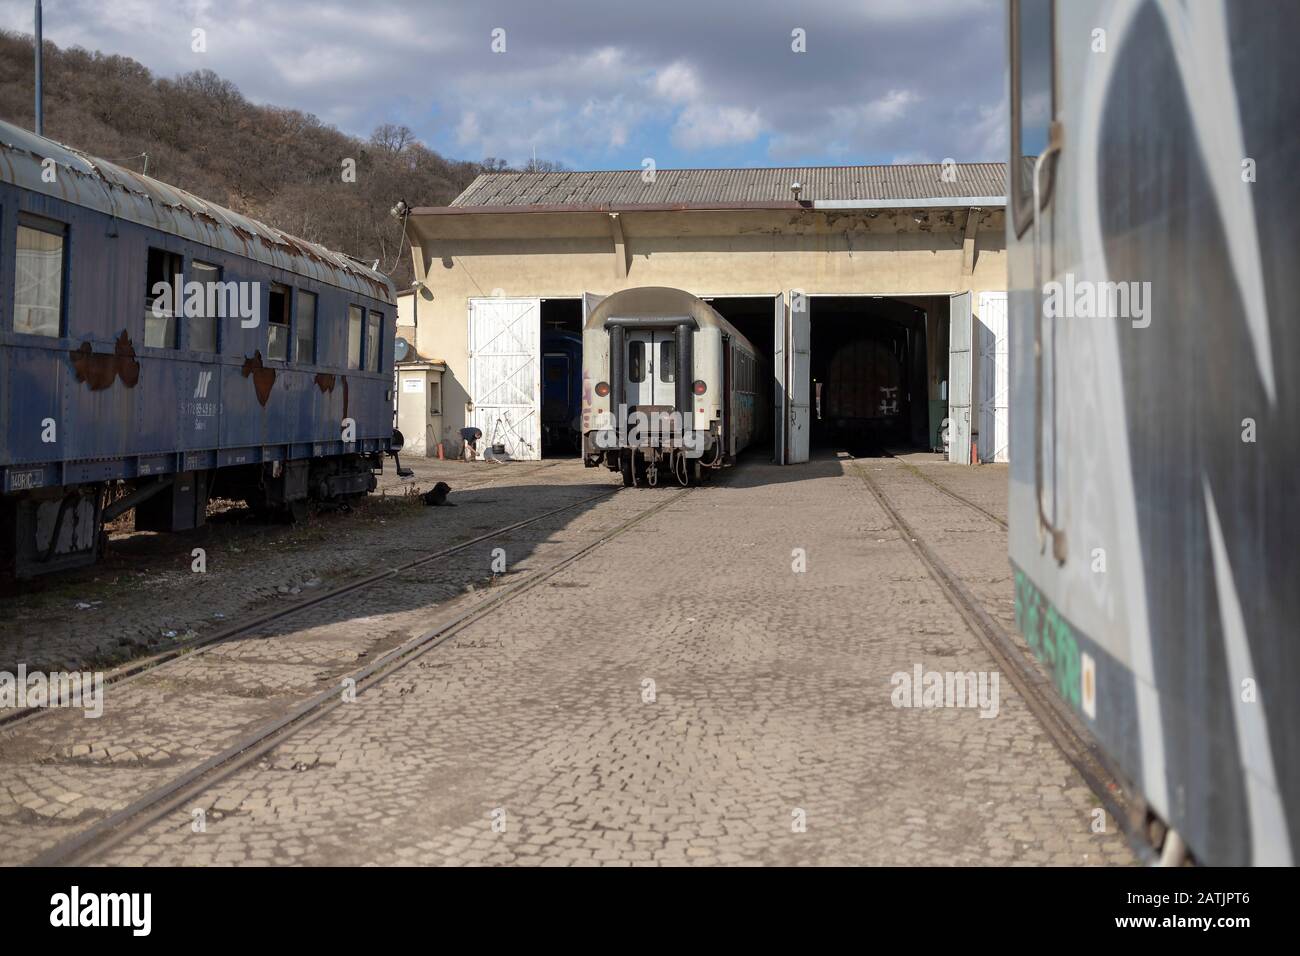 Belgrado, Serbia - vagoni ferroviari passeggeri presso il deposito di manutenzione Foto Stock